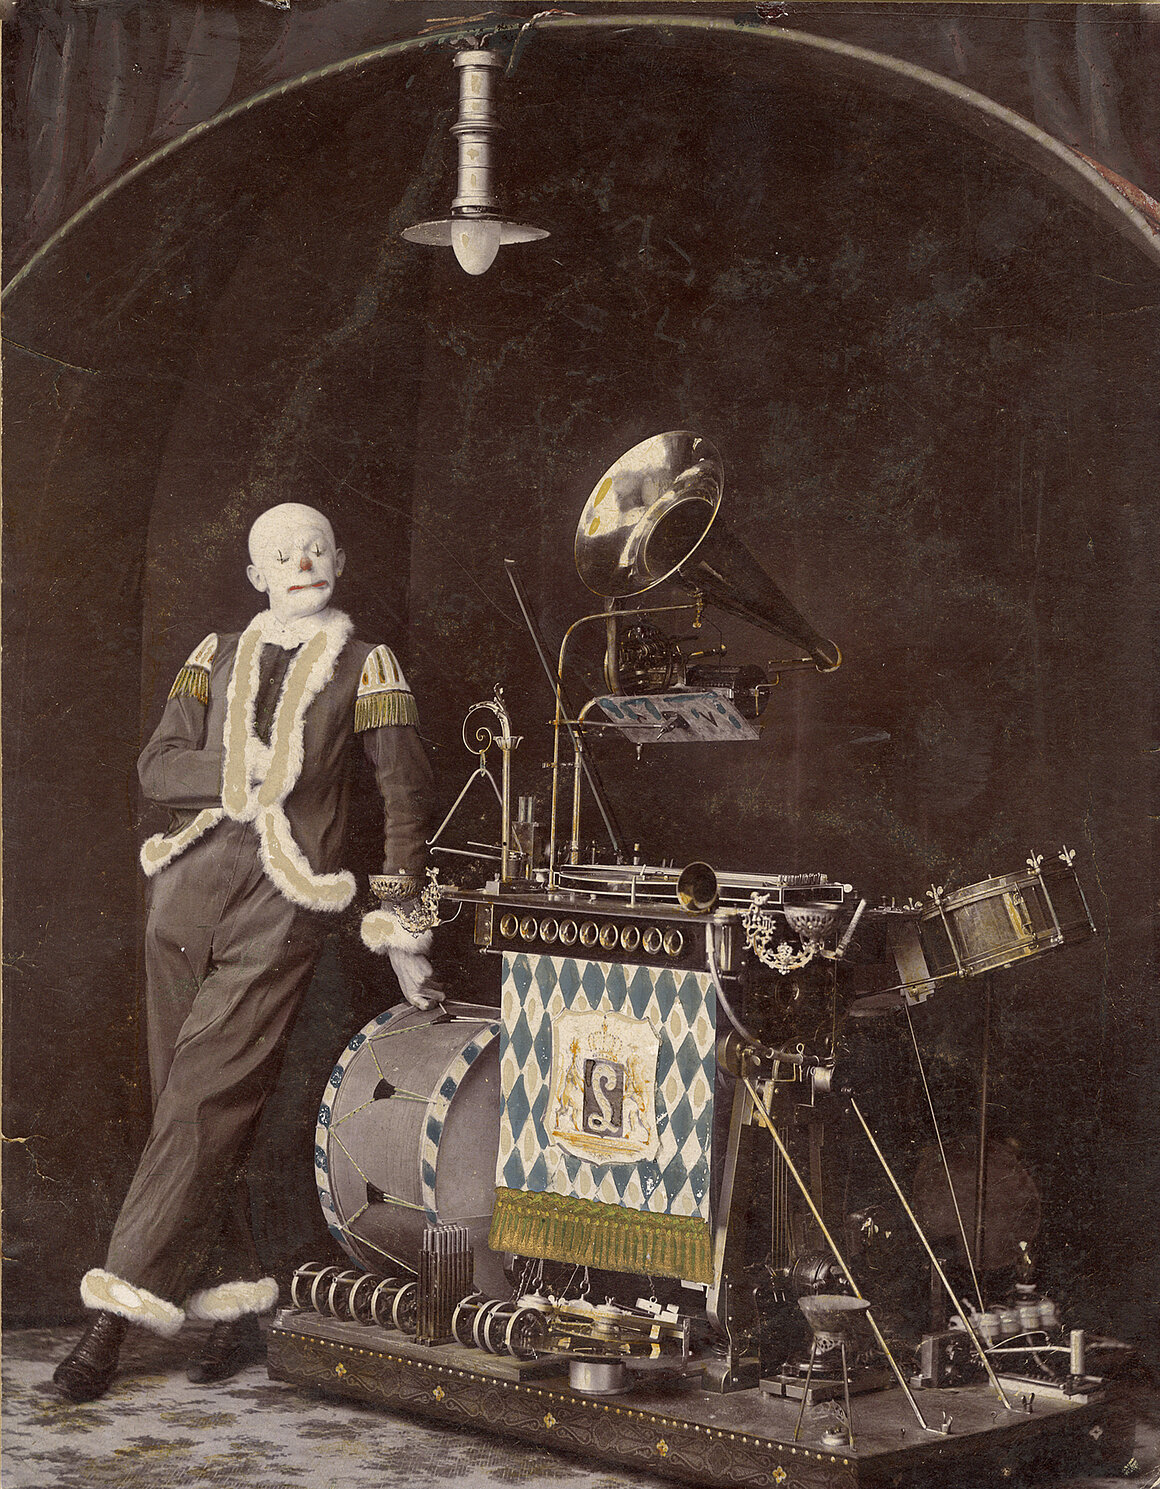 Valentin als Musical-Clown mit seinem selbstgebauten Orchestrion, um 1906